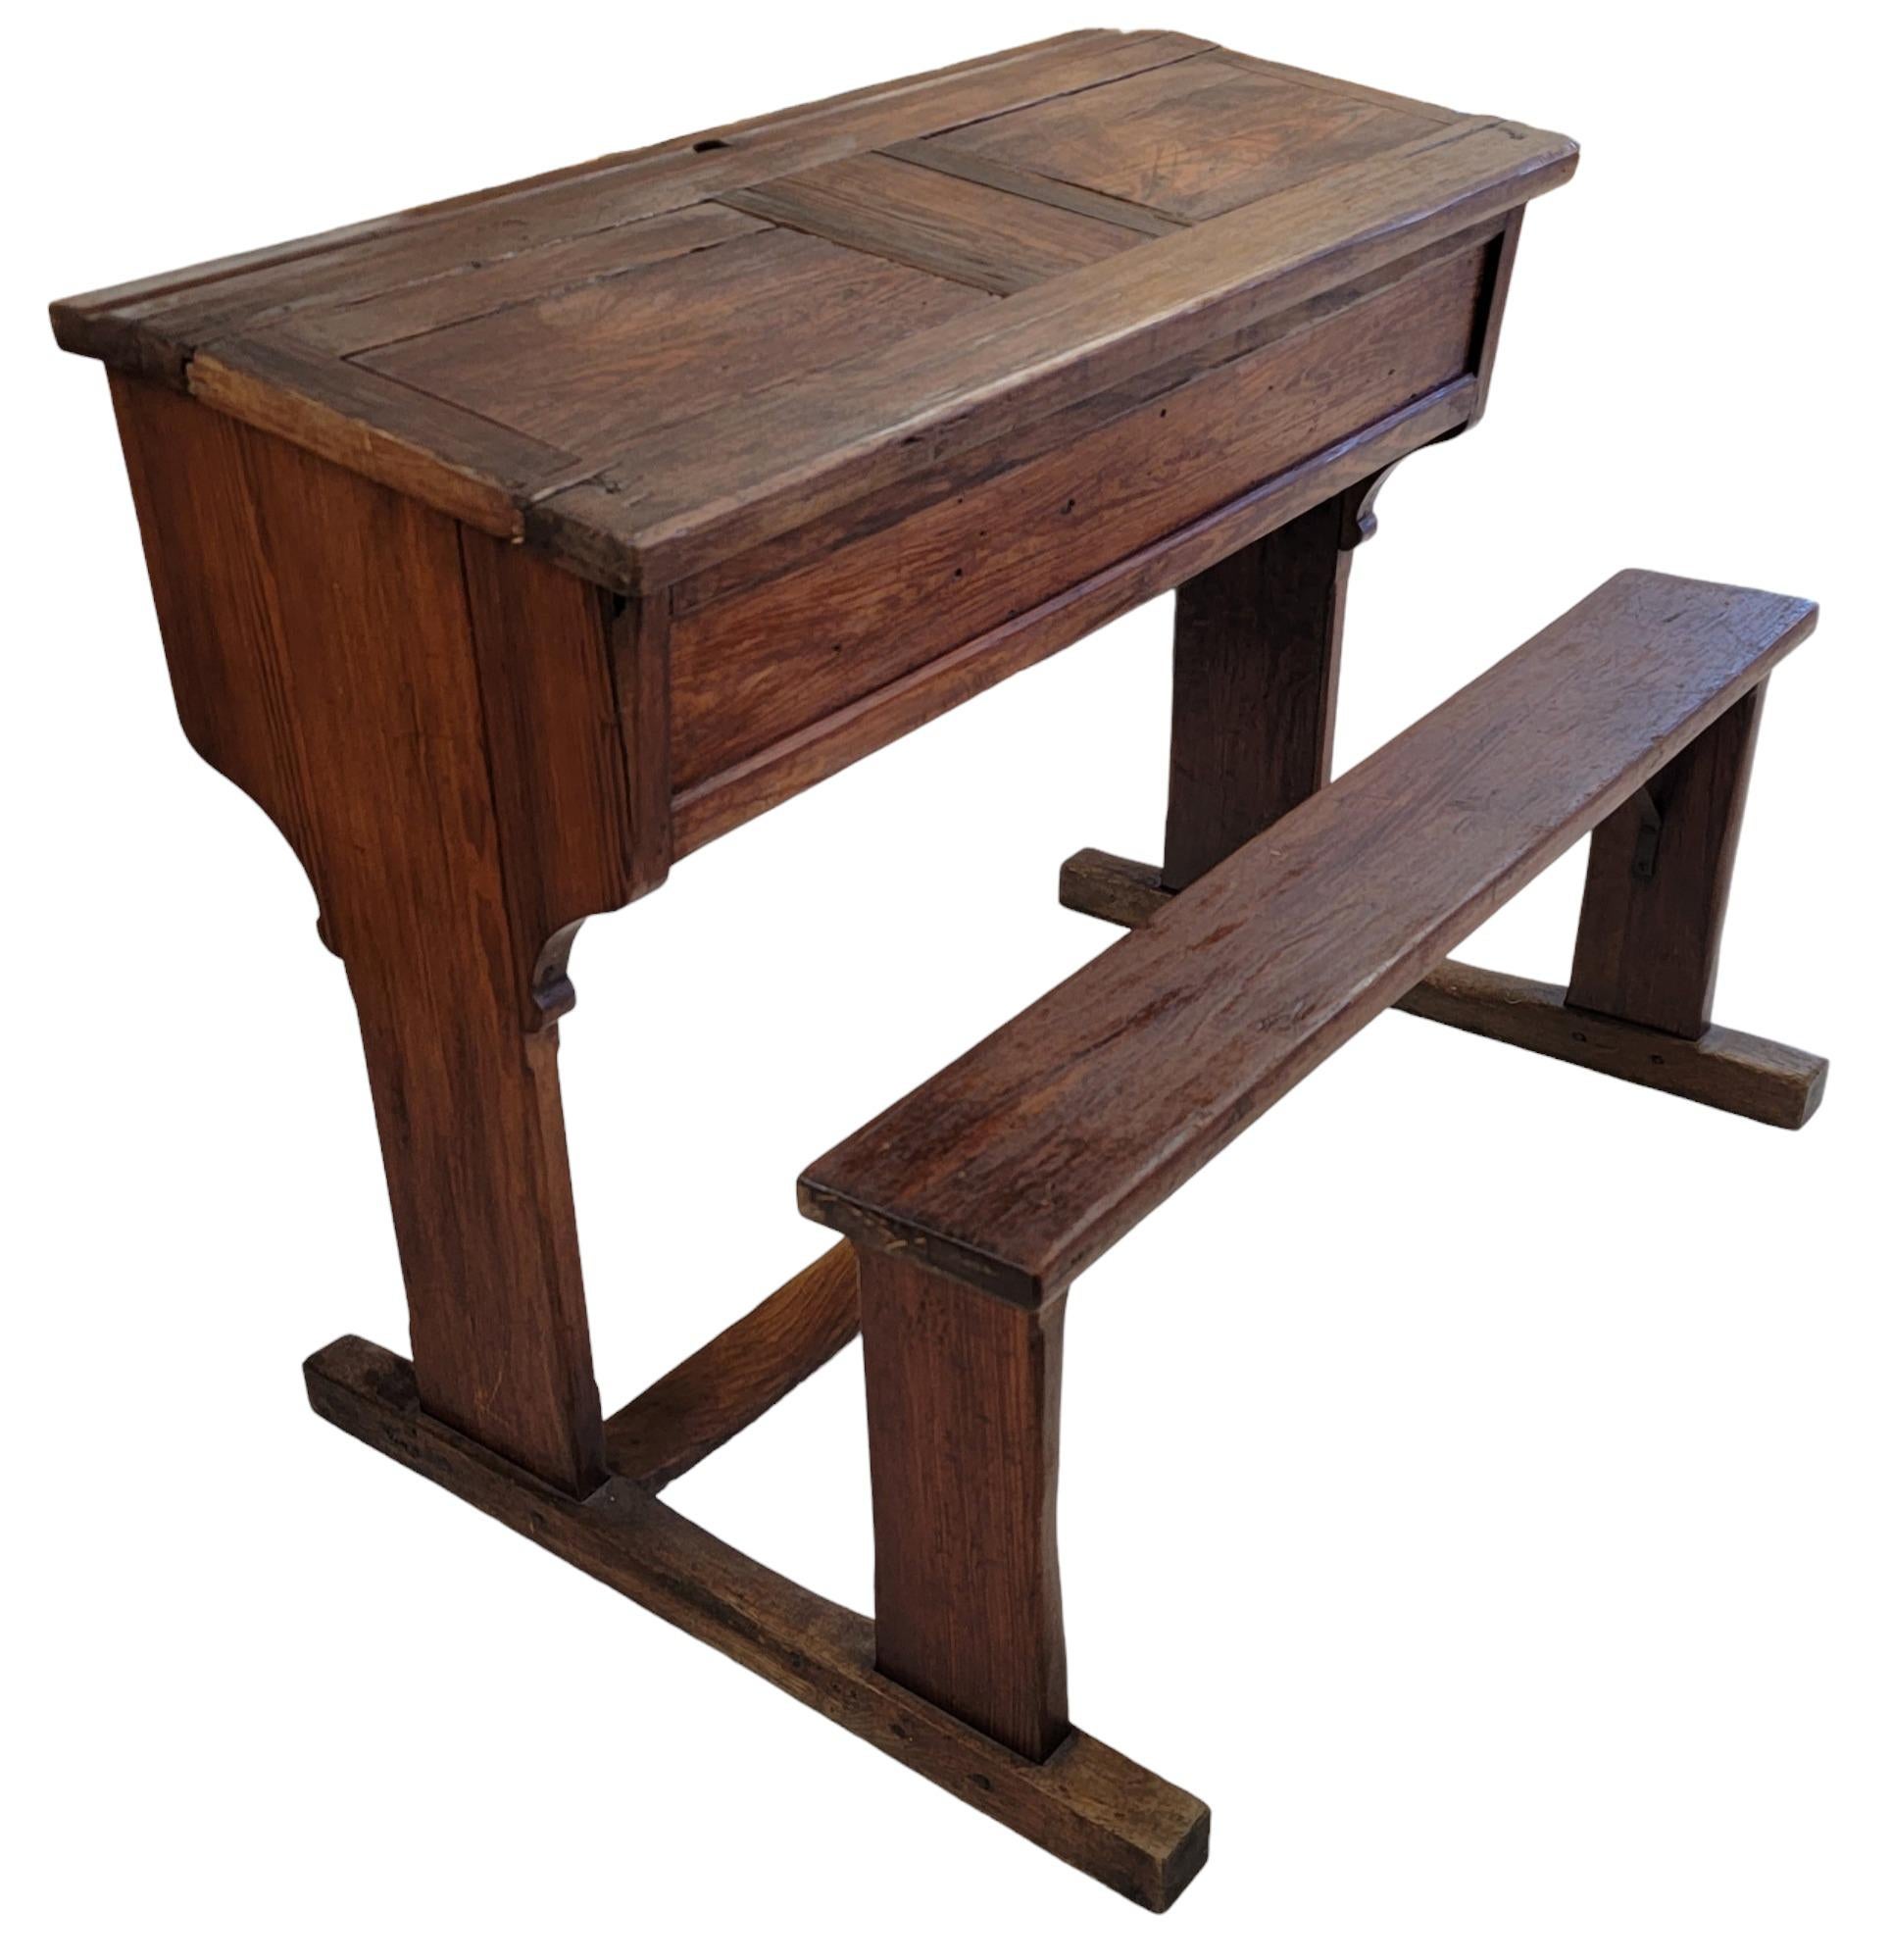 Rare bureau d'écolier français en bois du 19e siècle avec 2 compartiments coulissants. Ce bureau peut accueillir 2 personnes travaillant de chaque côté. Le banc est relié au bureau par les échelons inférieurs. Deux tiges métalliques sont placées